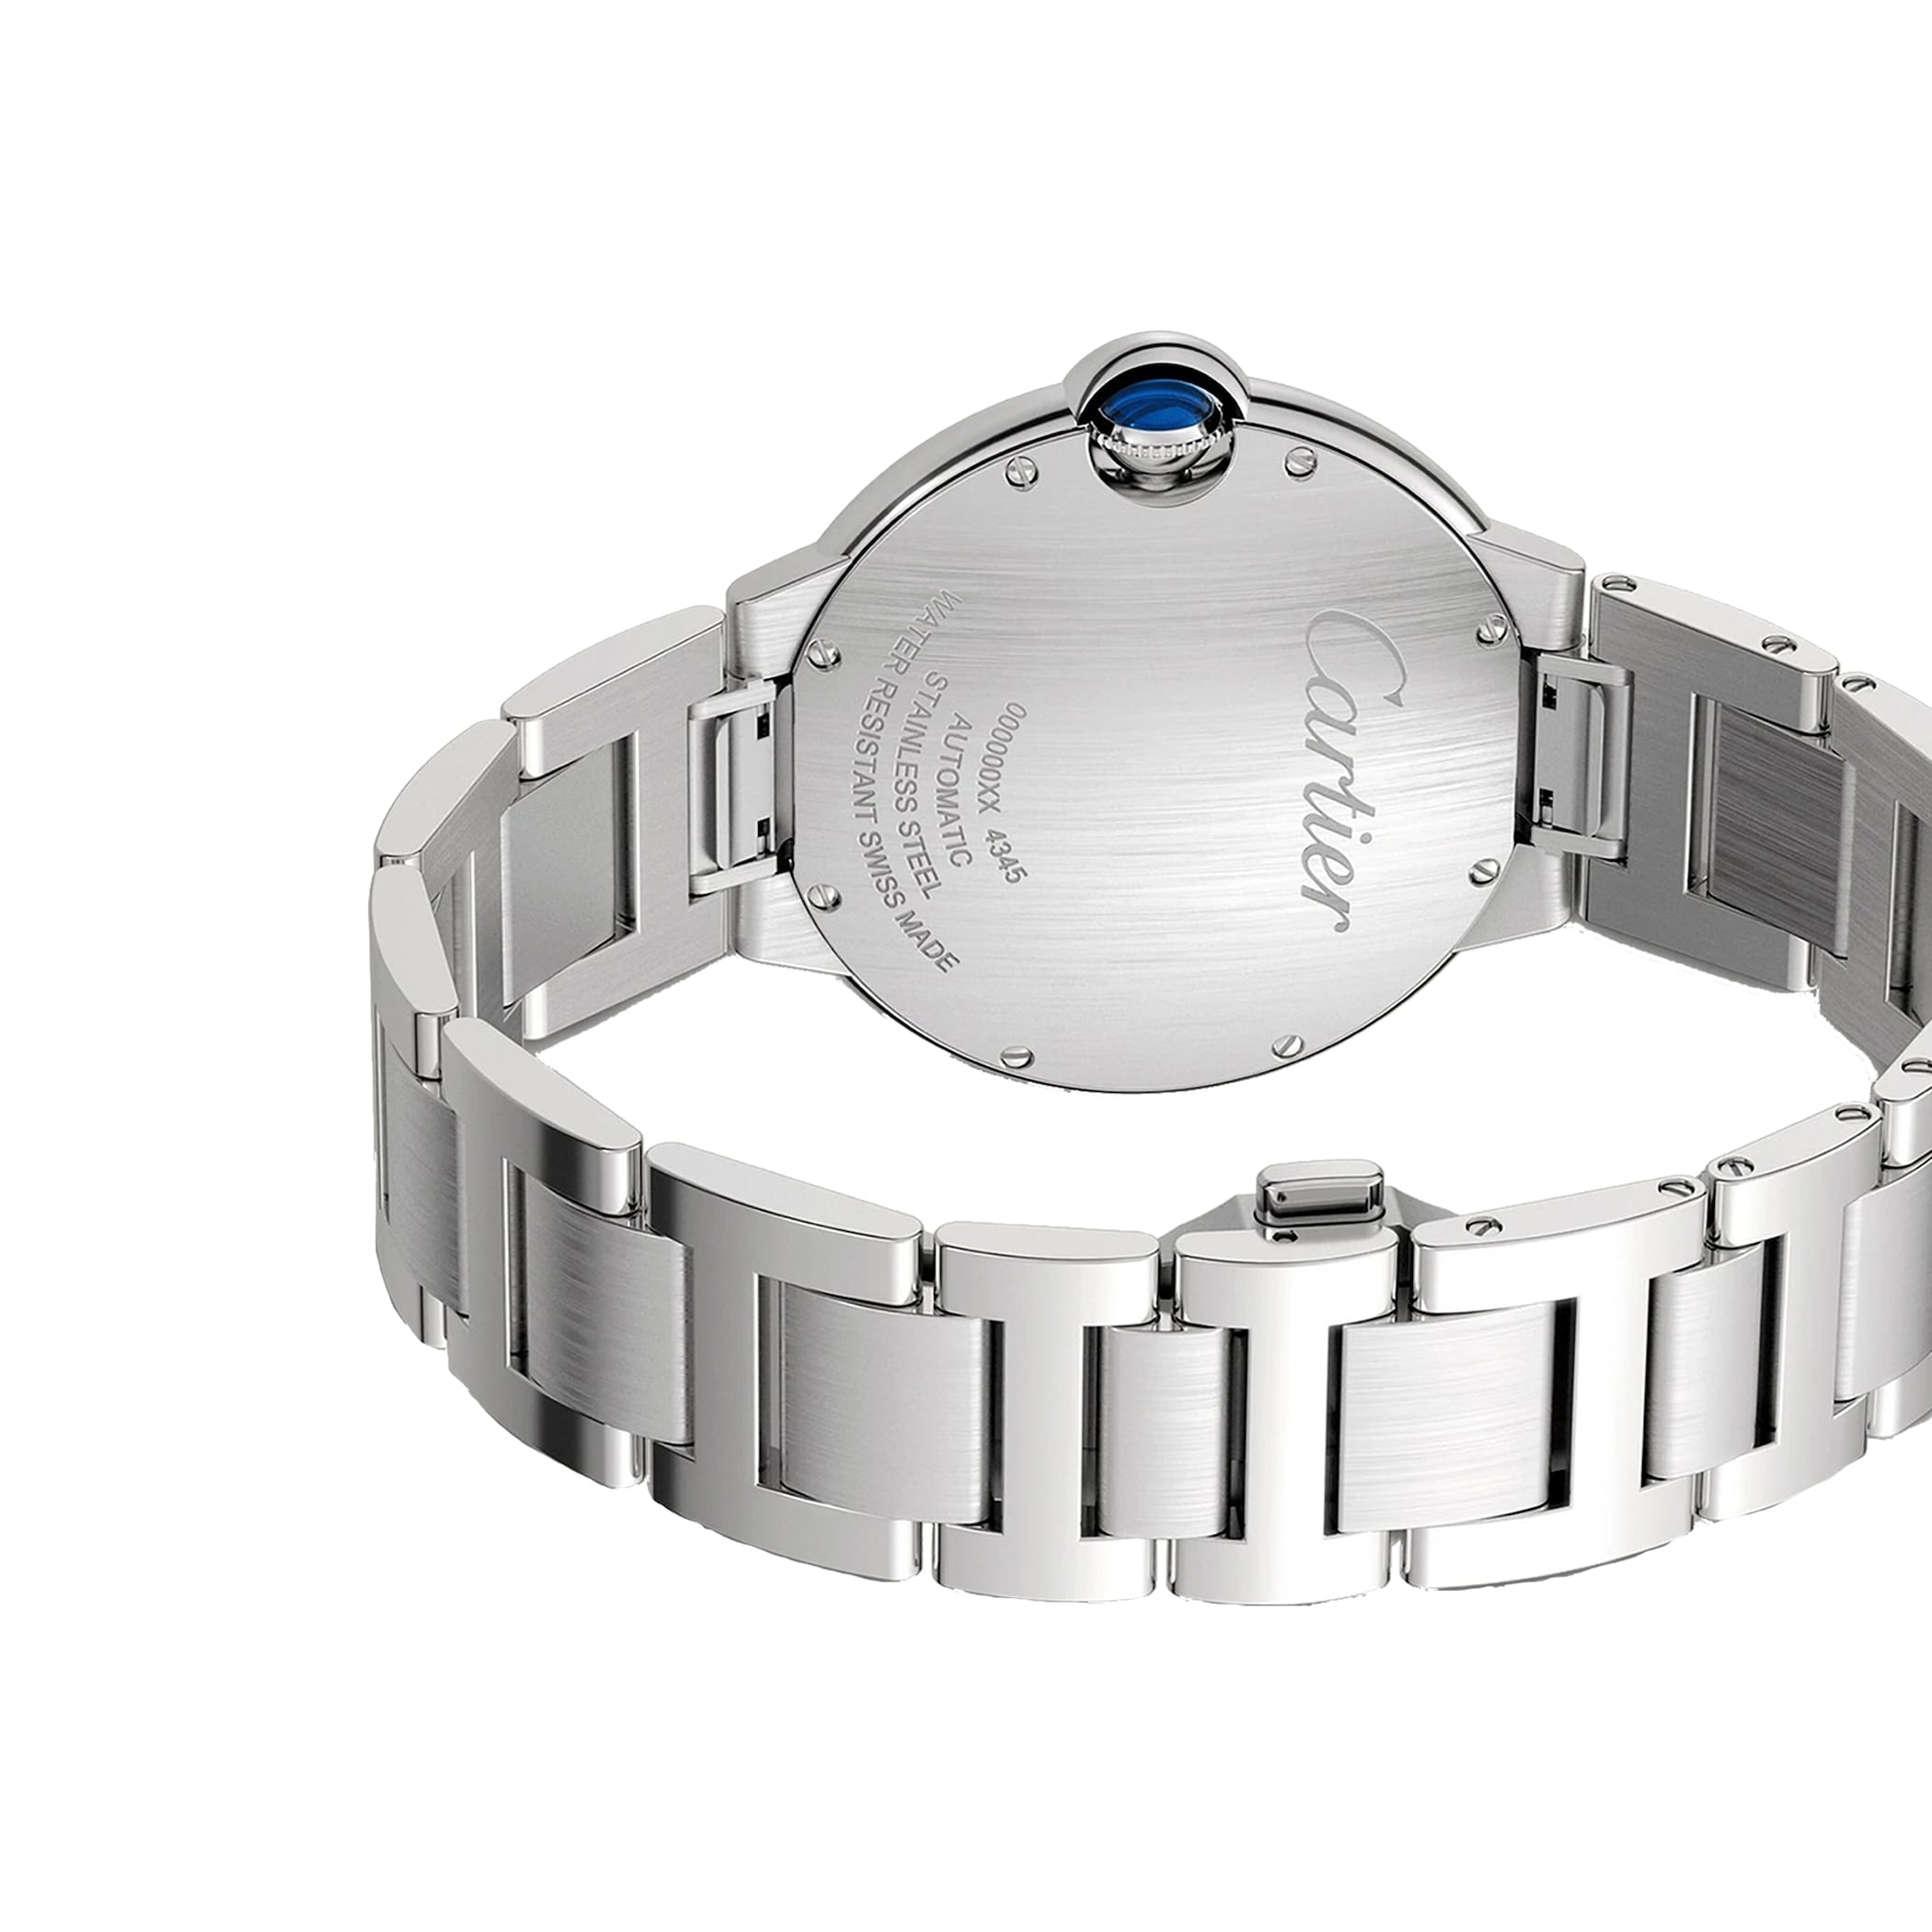 Ballon Bleu De Cartier Watch 40mm, Automatic Movement, Steel WSBB0060